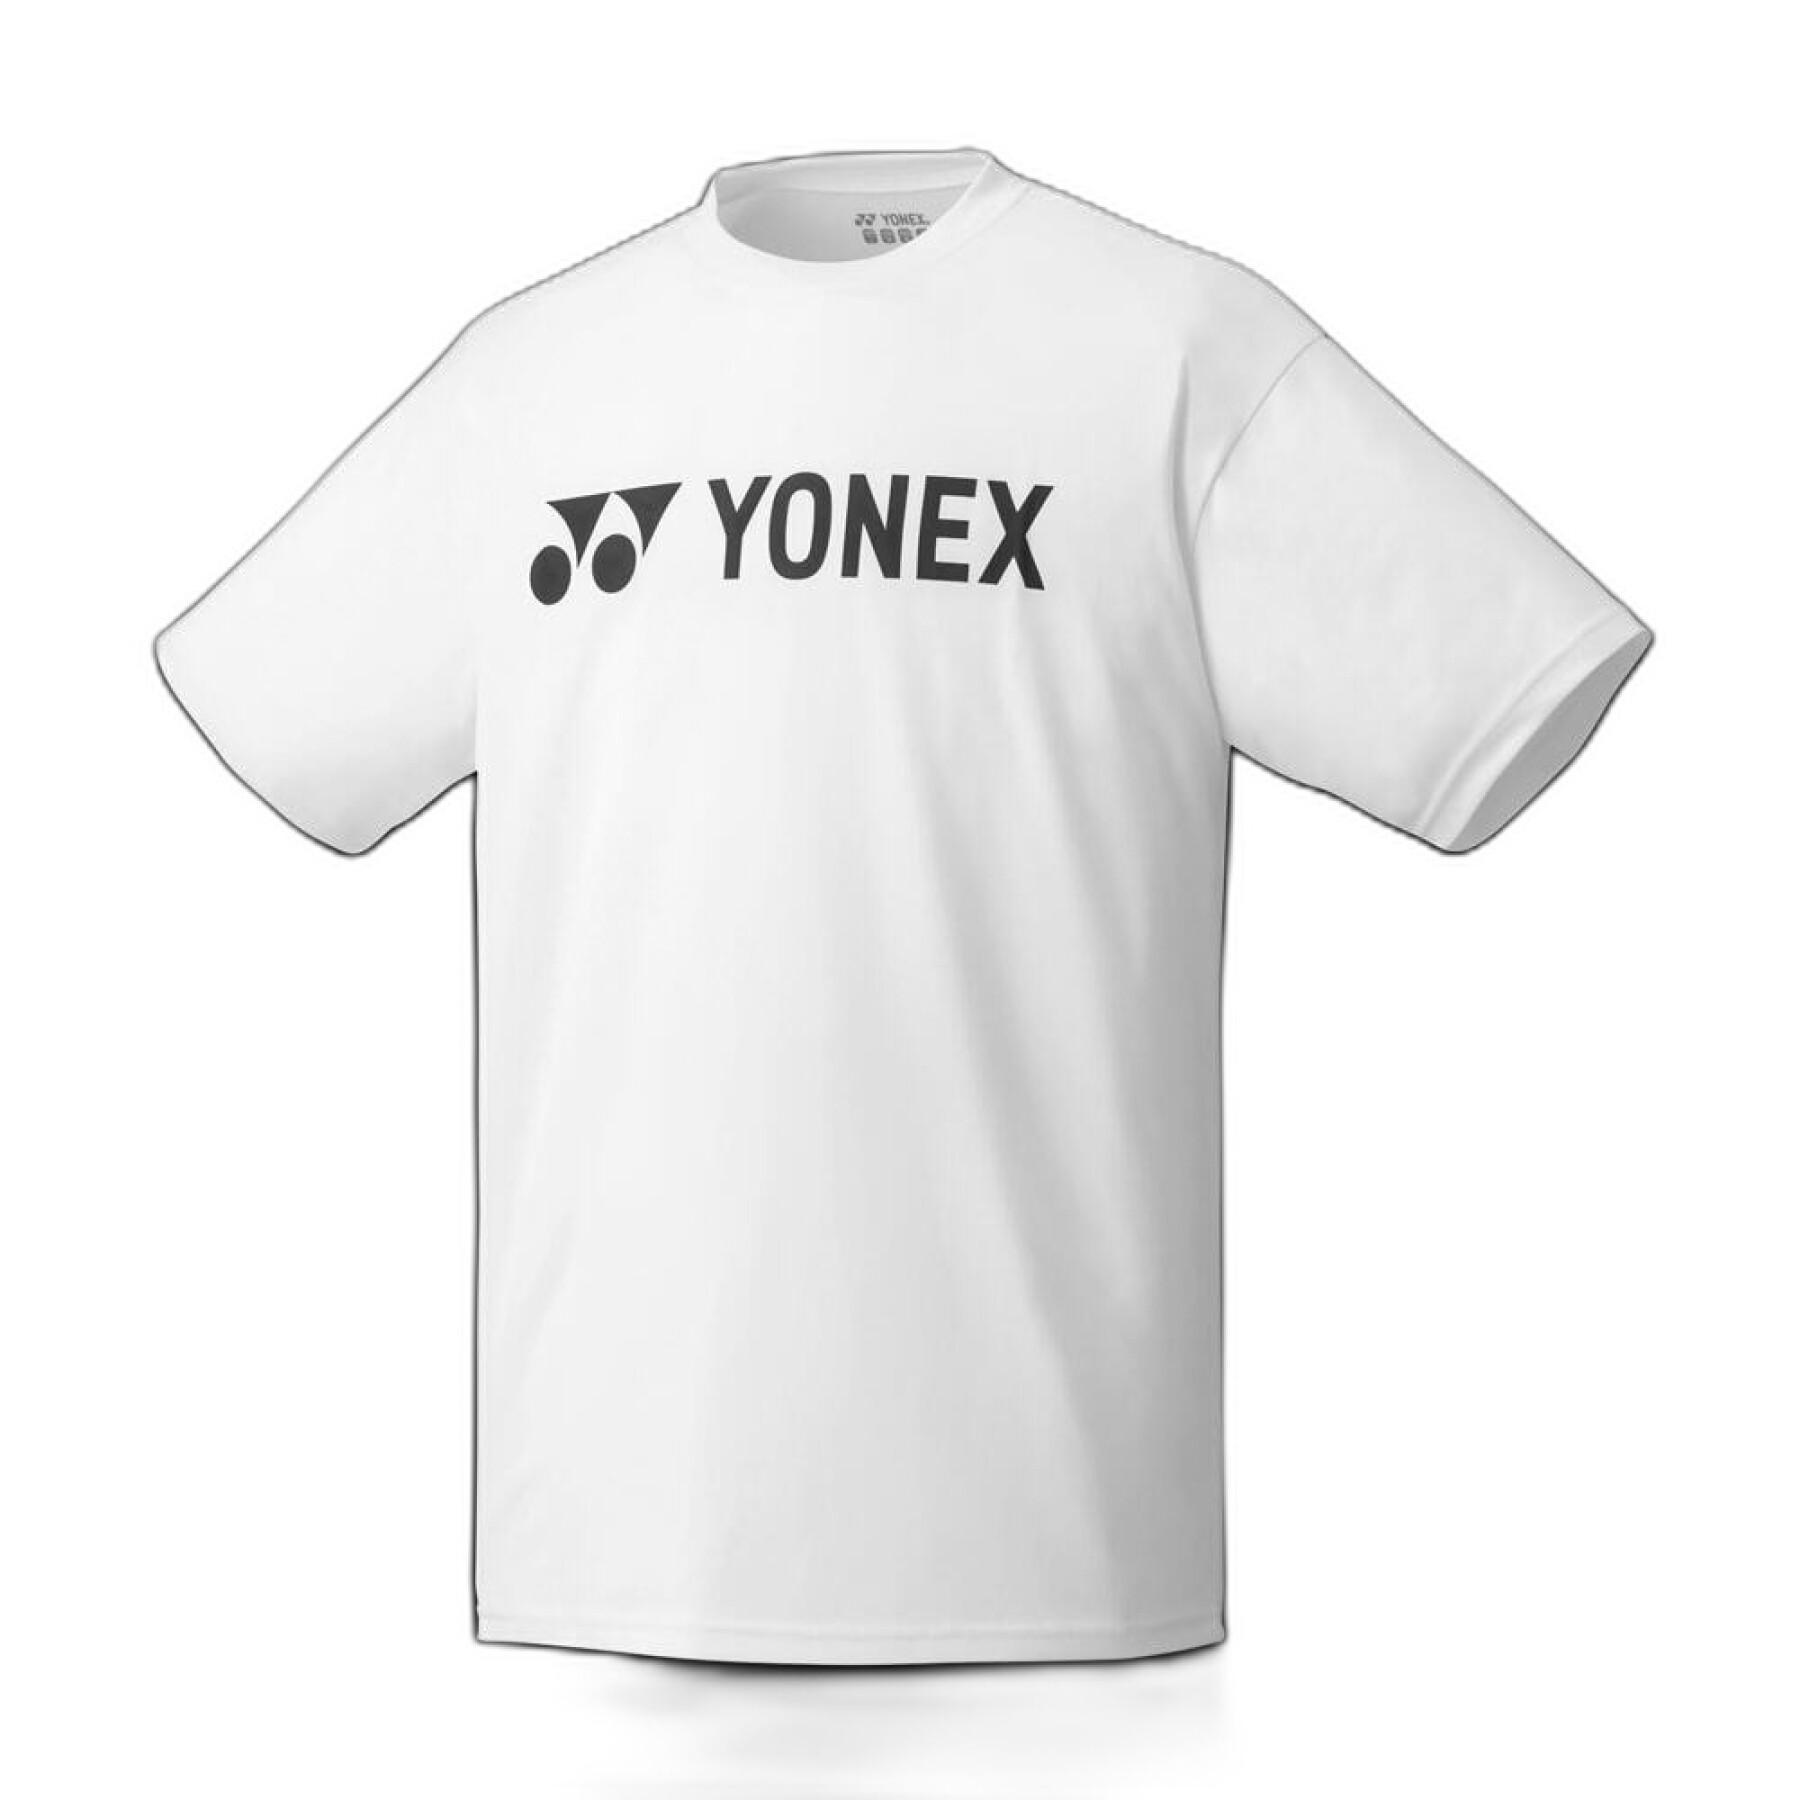 Camiseta Yonex Plain